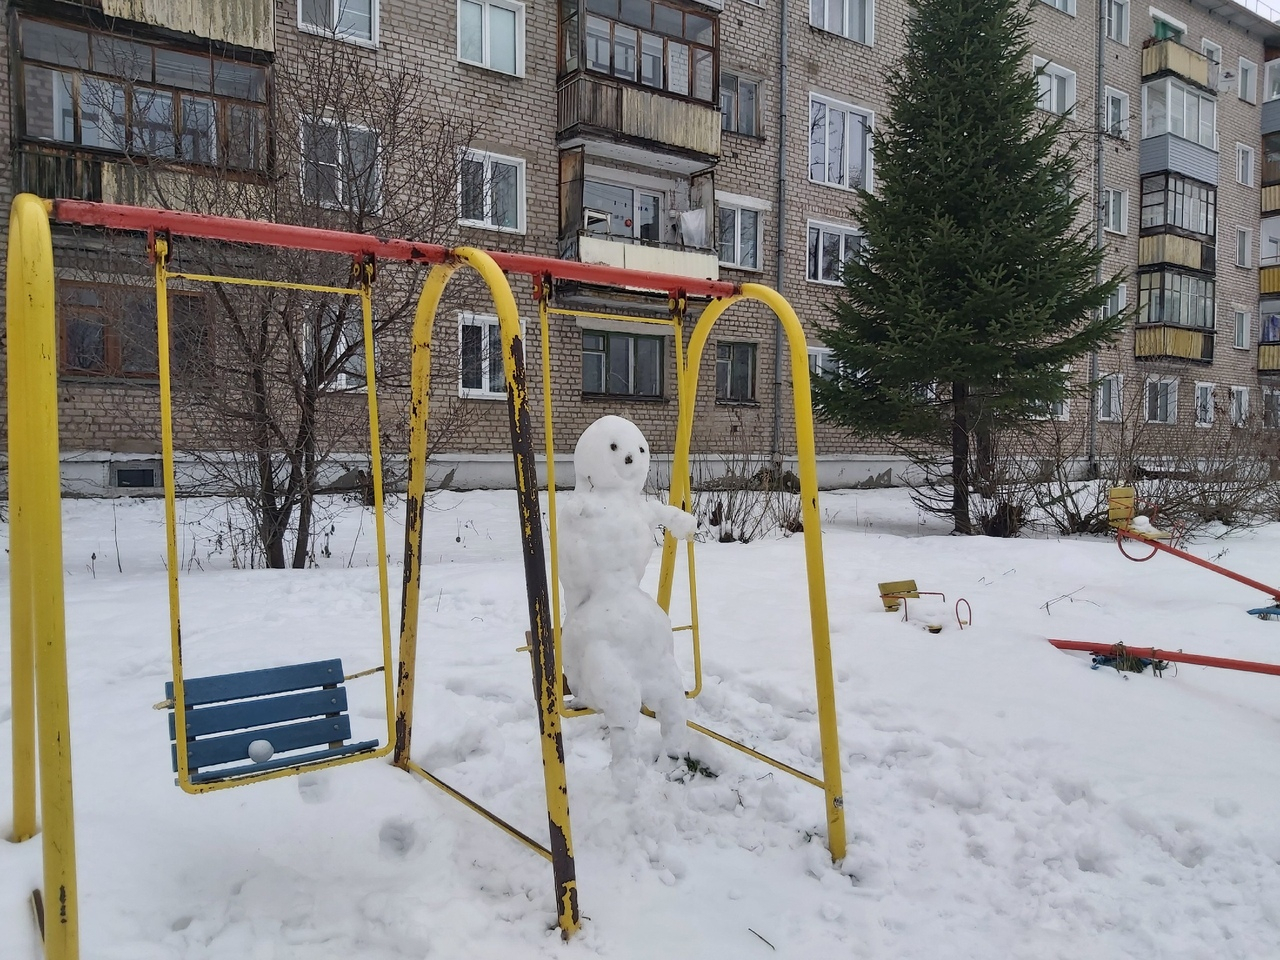 Фоторепортаж из соцсетей: 18 необычных снежных скульптур на улицах Кирова